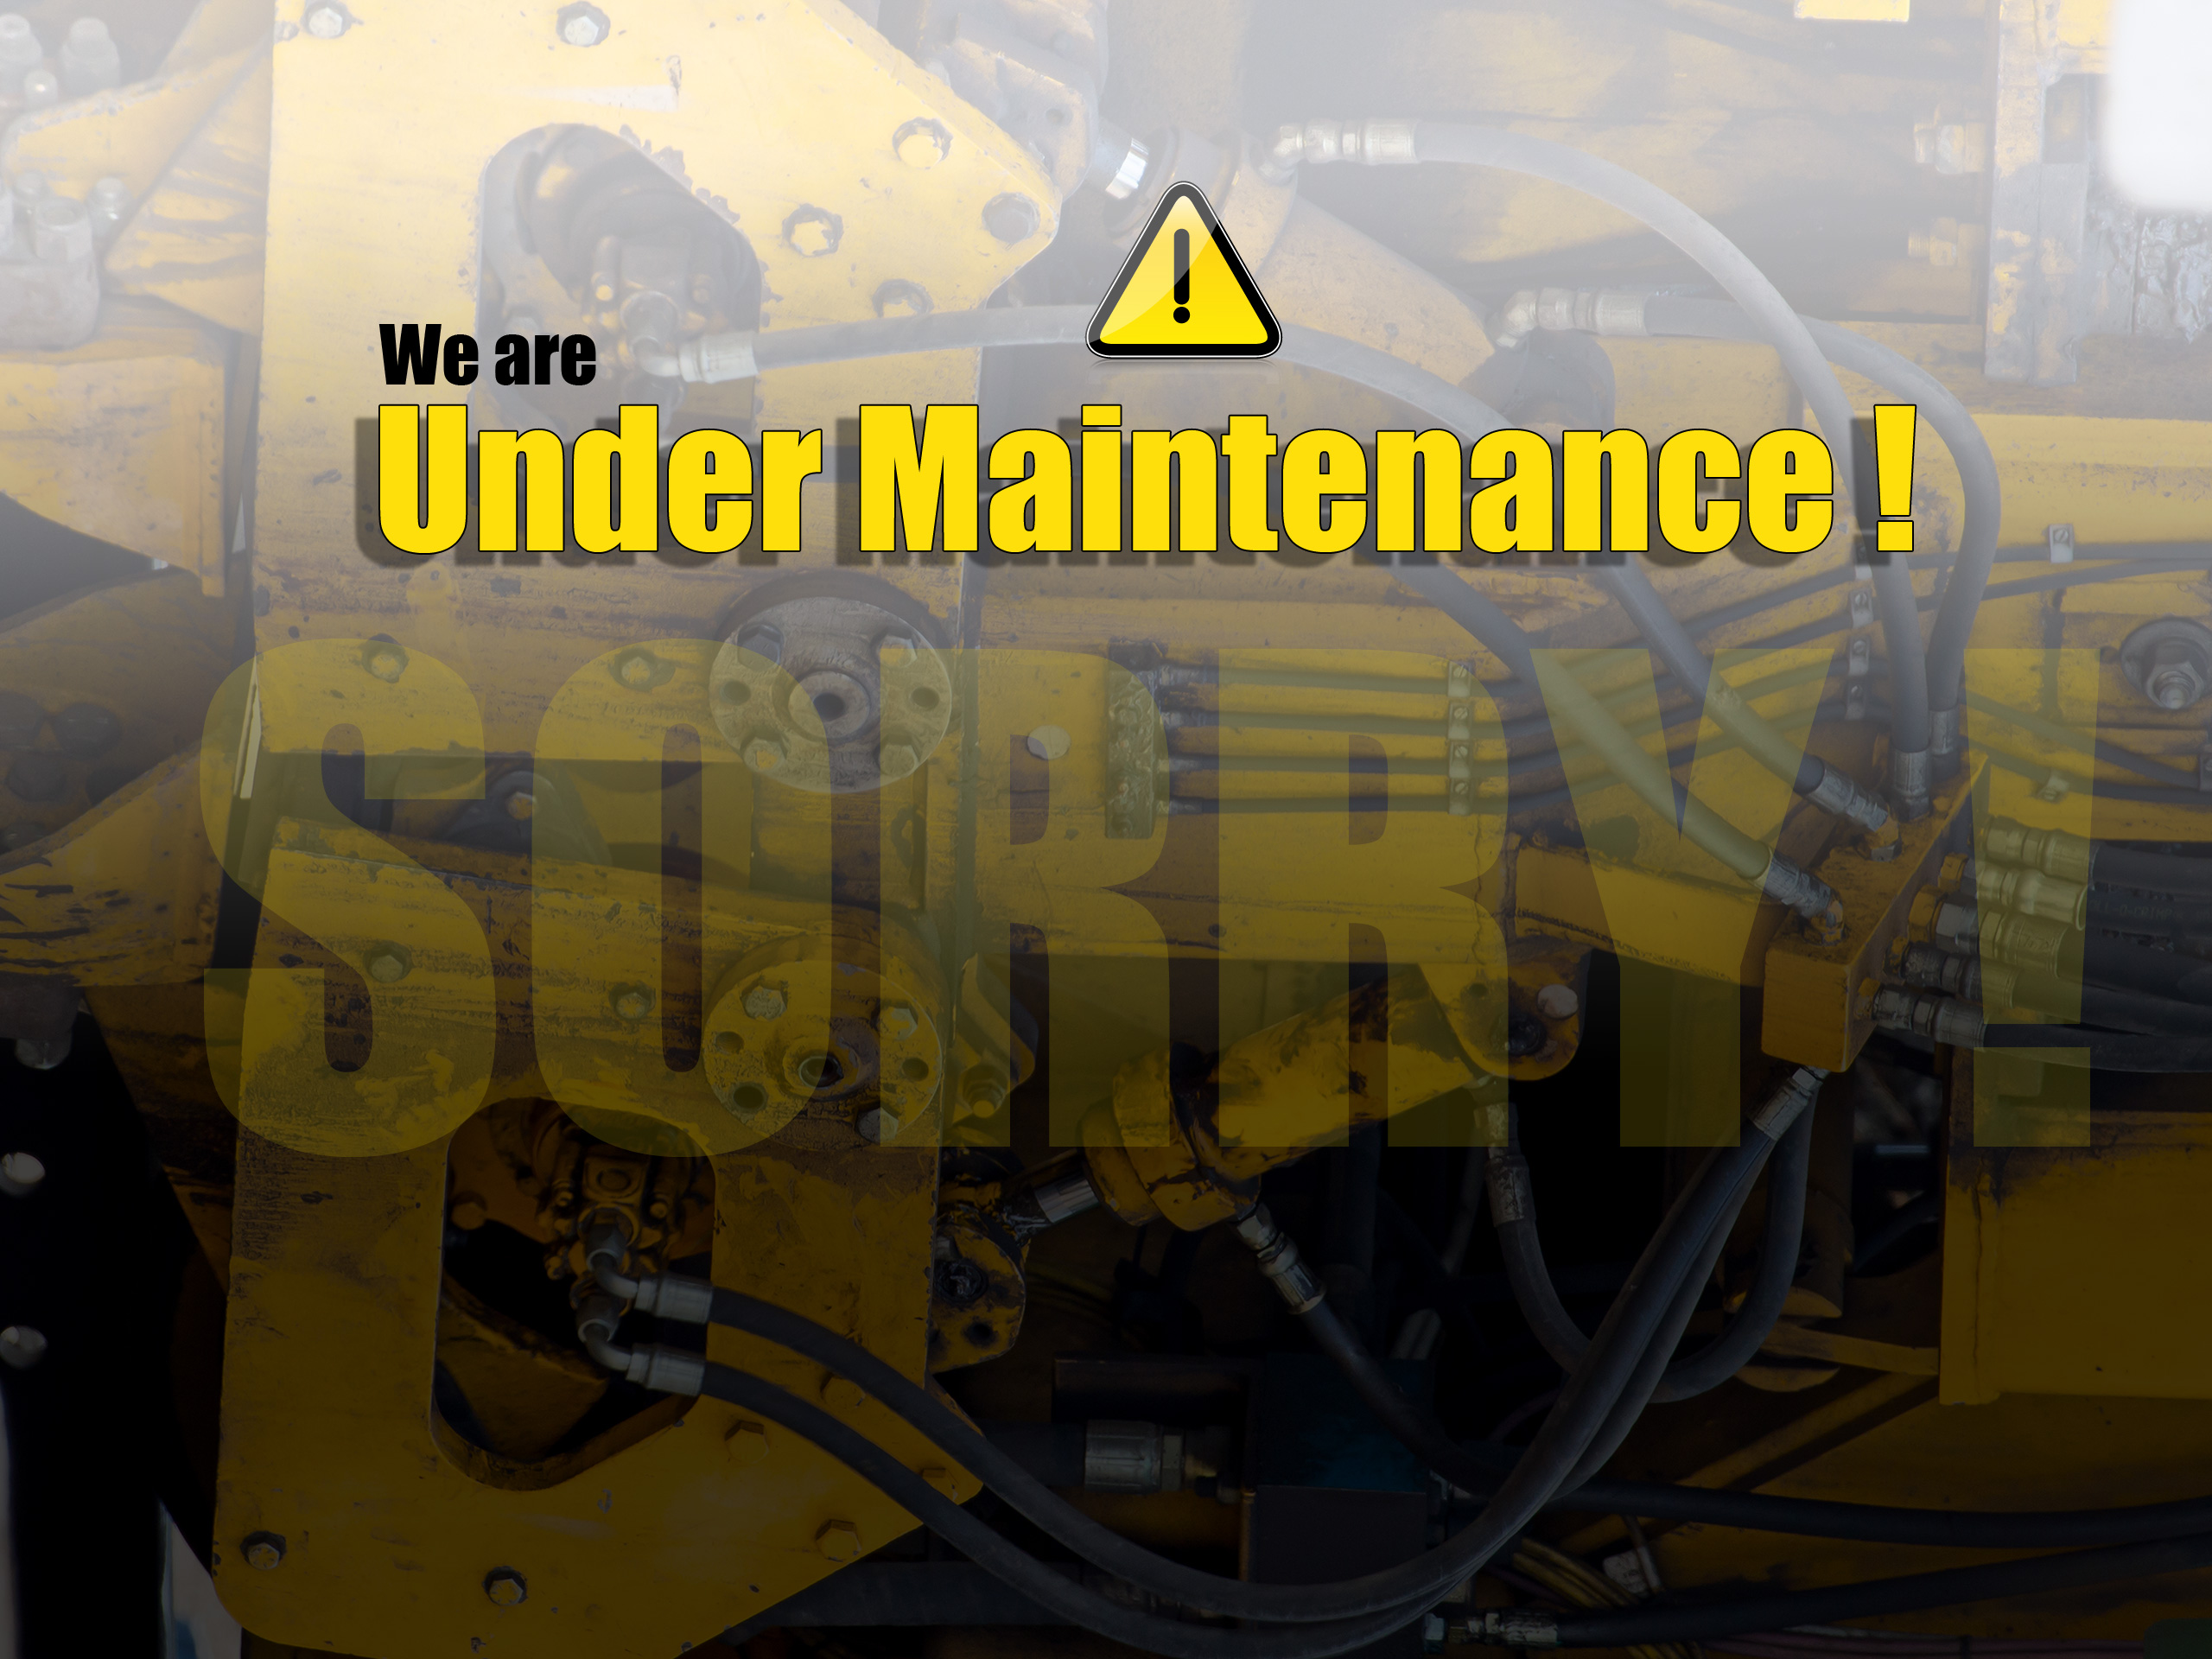 Website Under Maintenance